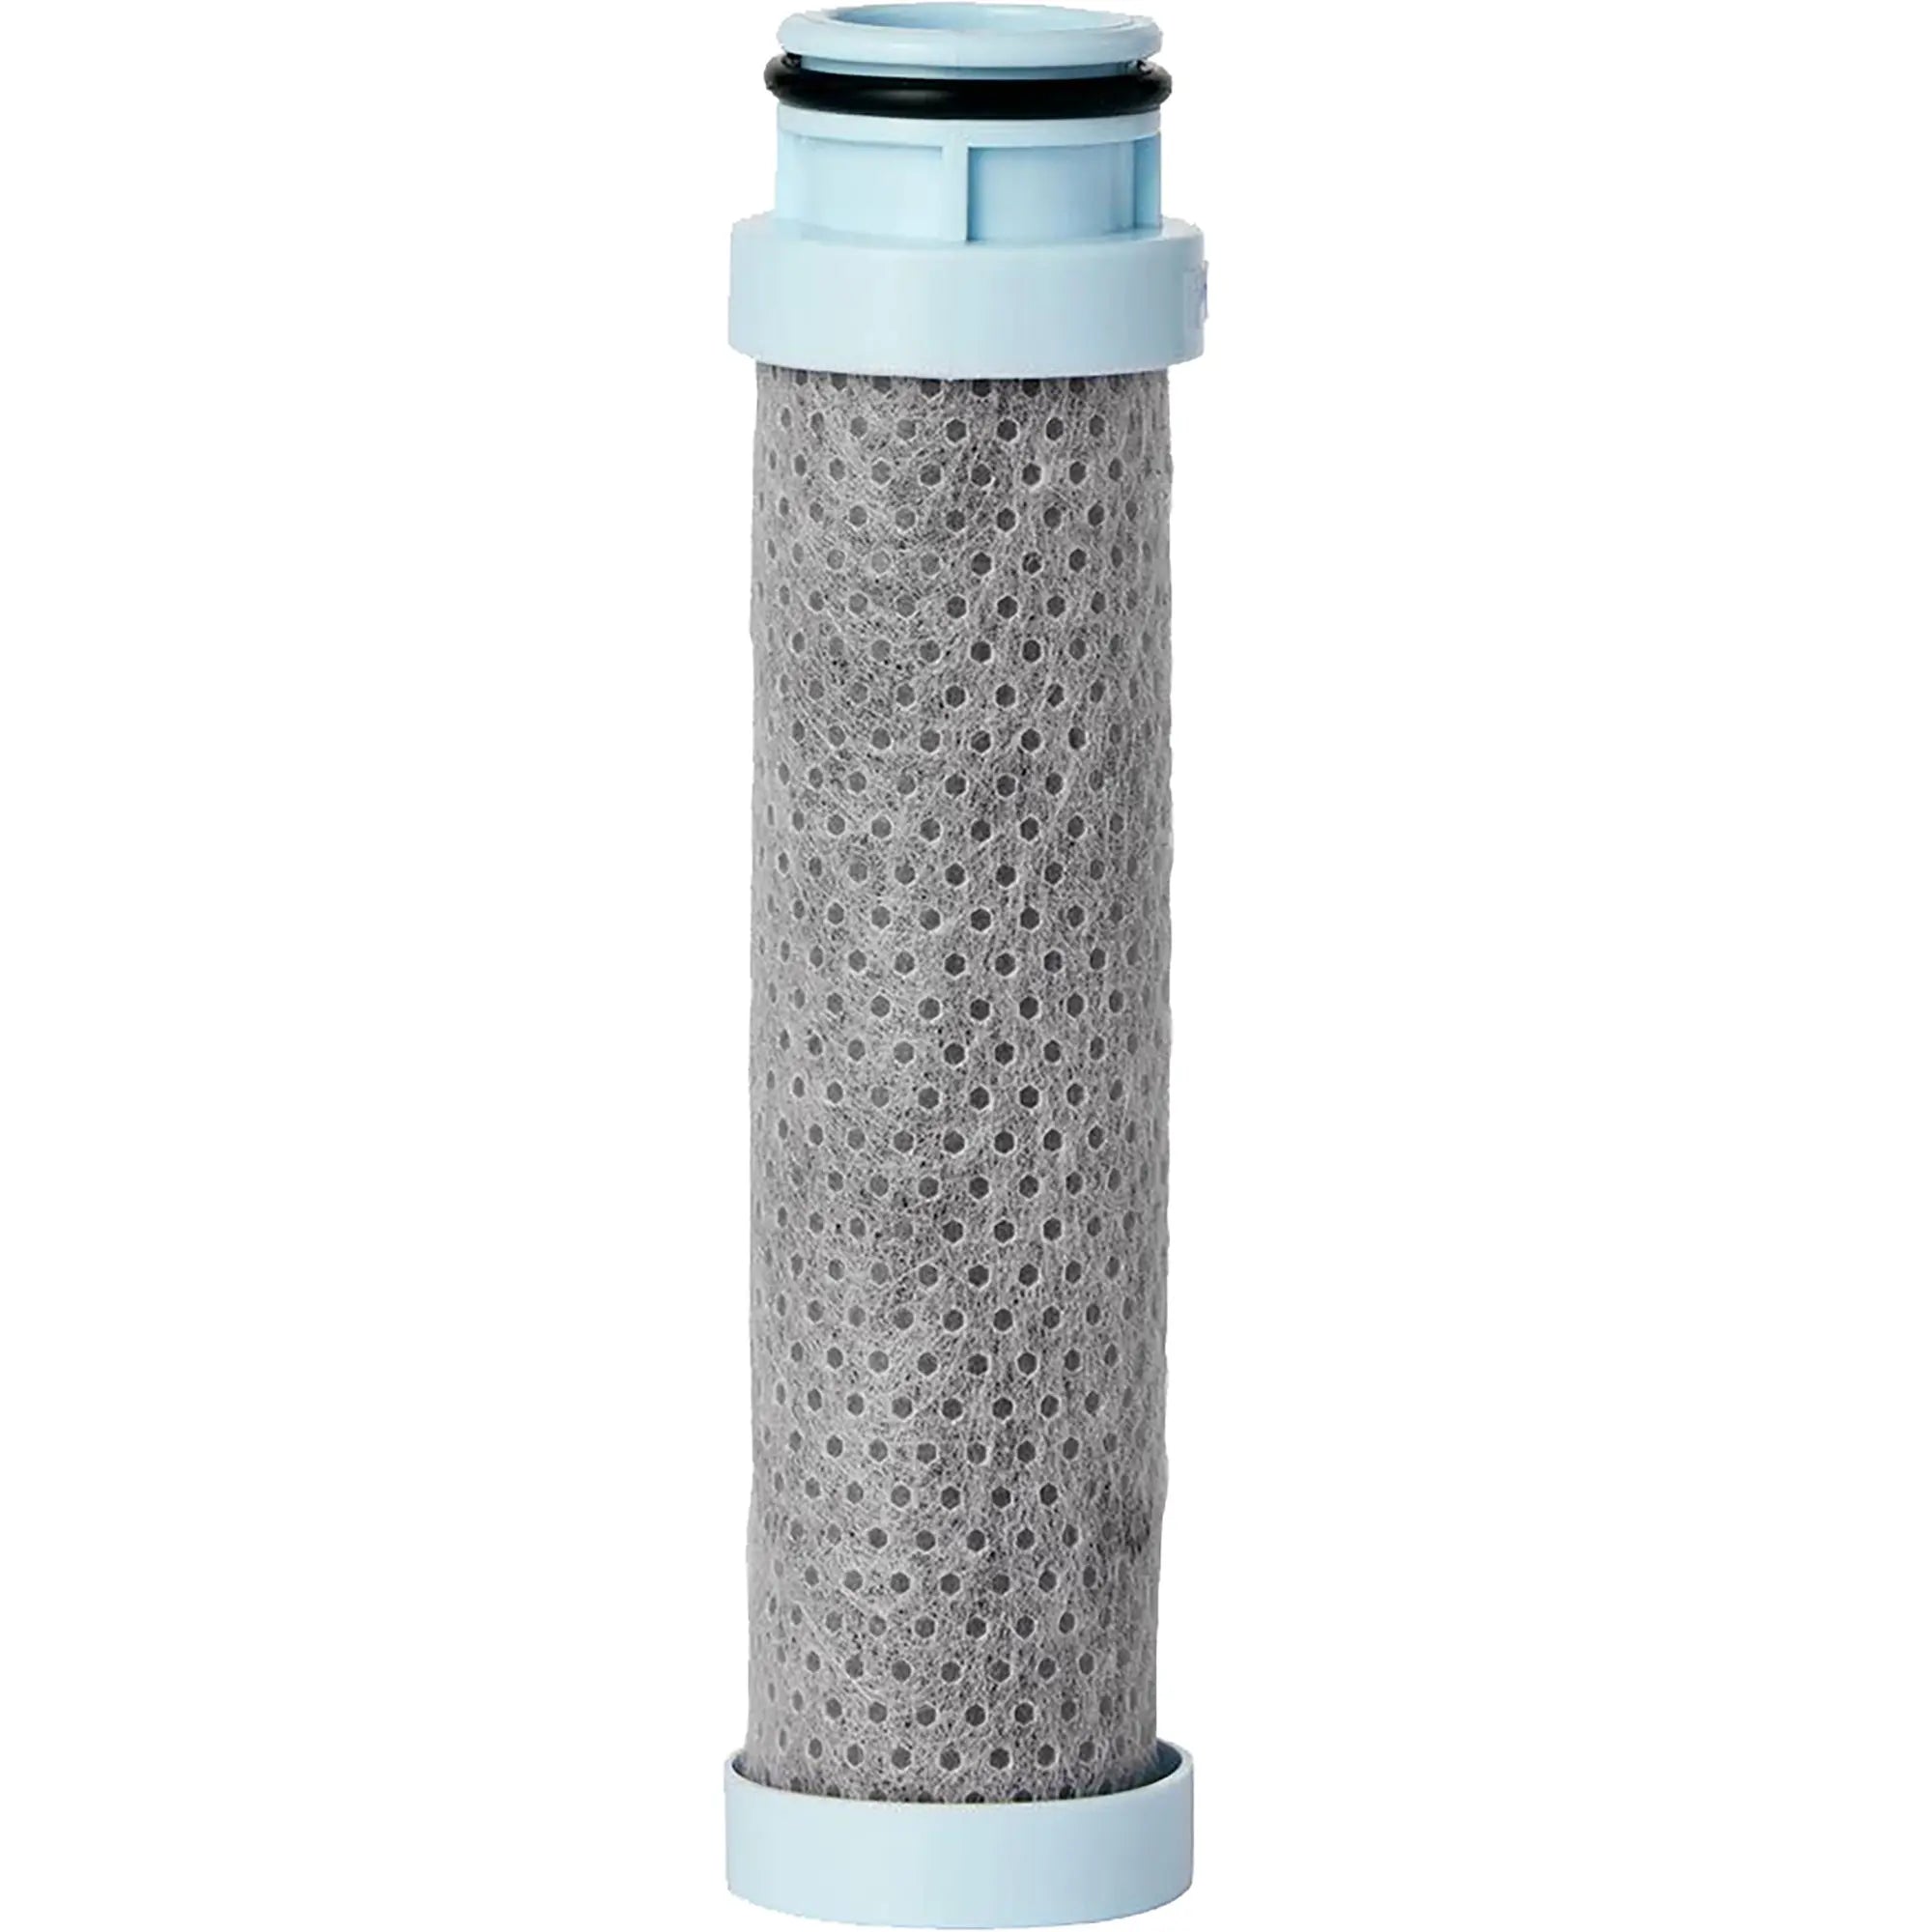 Contigo Replacement Filter for Wells Filter Water Bottles Contigo